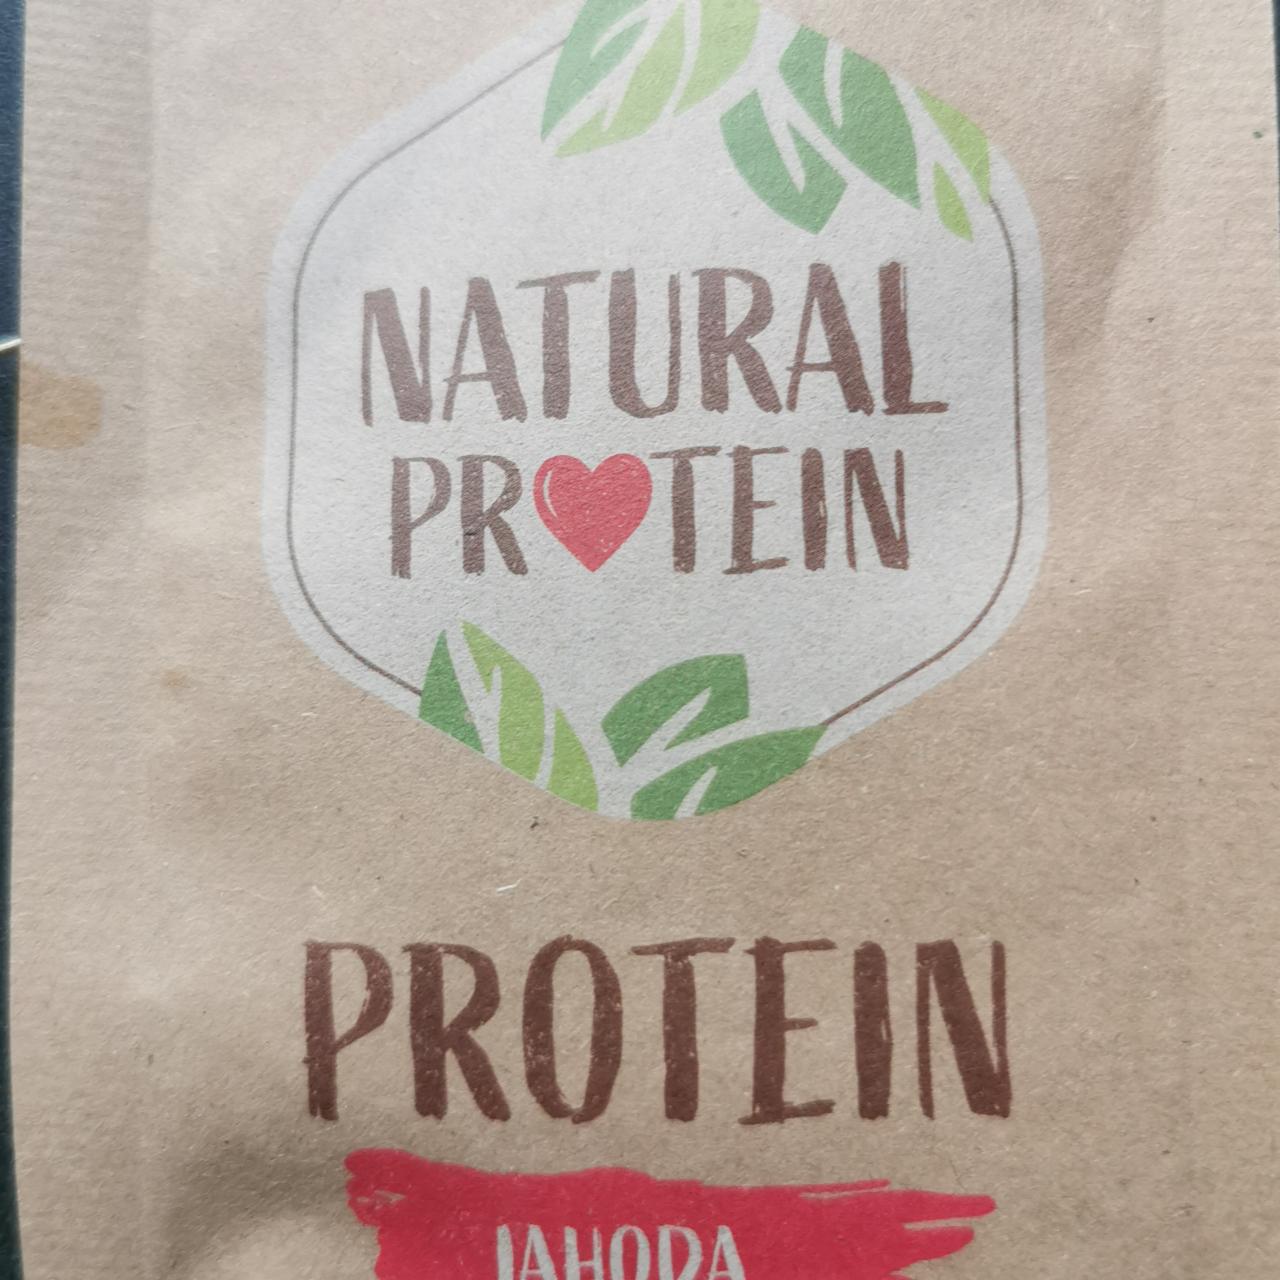 Képek - Protein jahoda Natural protein